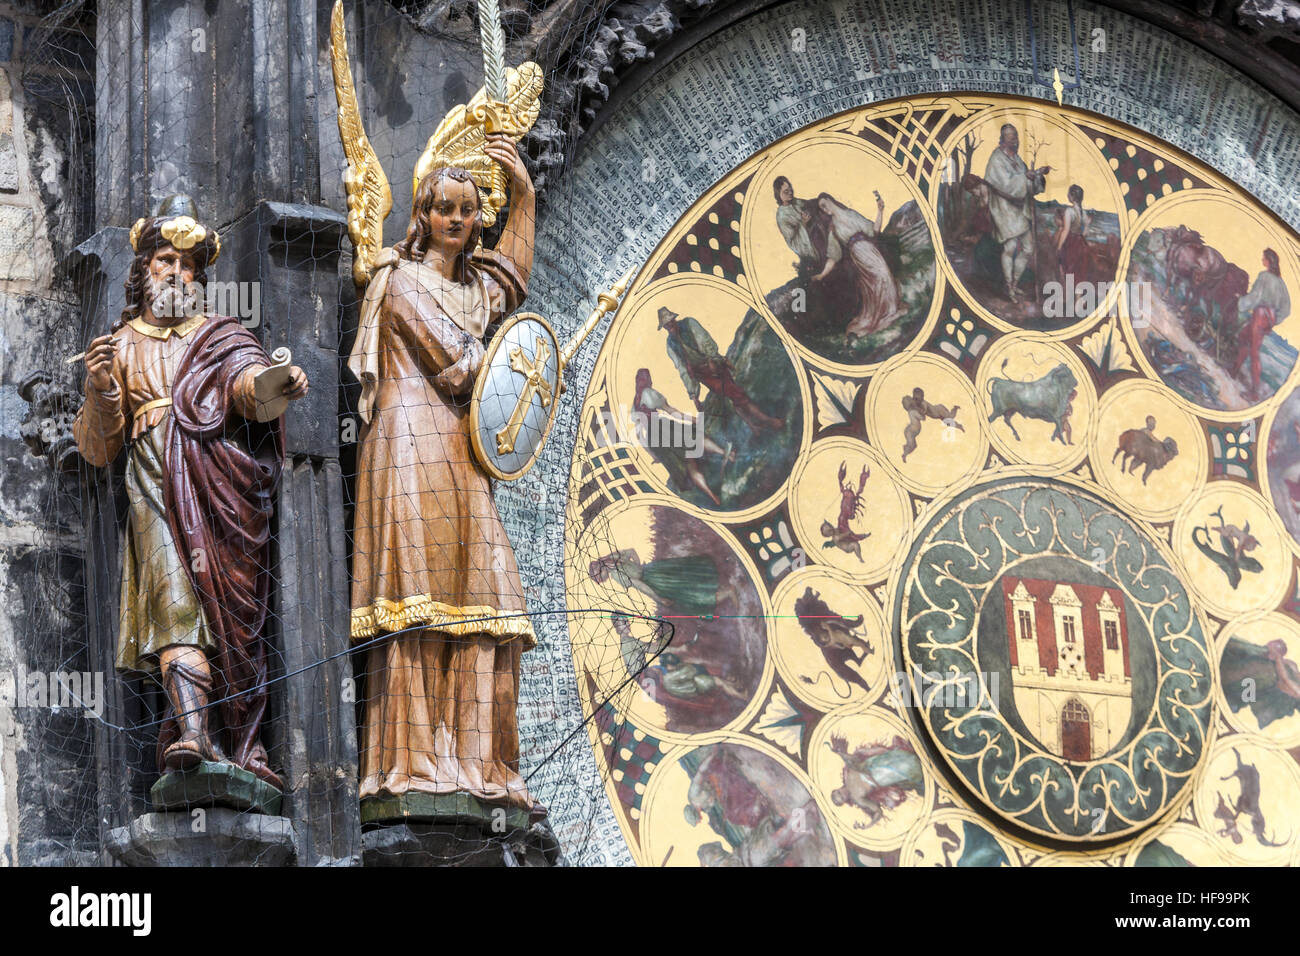 Estatuas en el reloj astronómico, filósofo y el Arcángel San Miguel. Antecedentes junta calendario de Josef Mánes, Old Town Square, Praga, República Checa Foto de stock